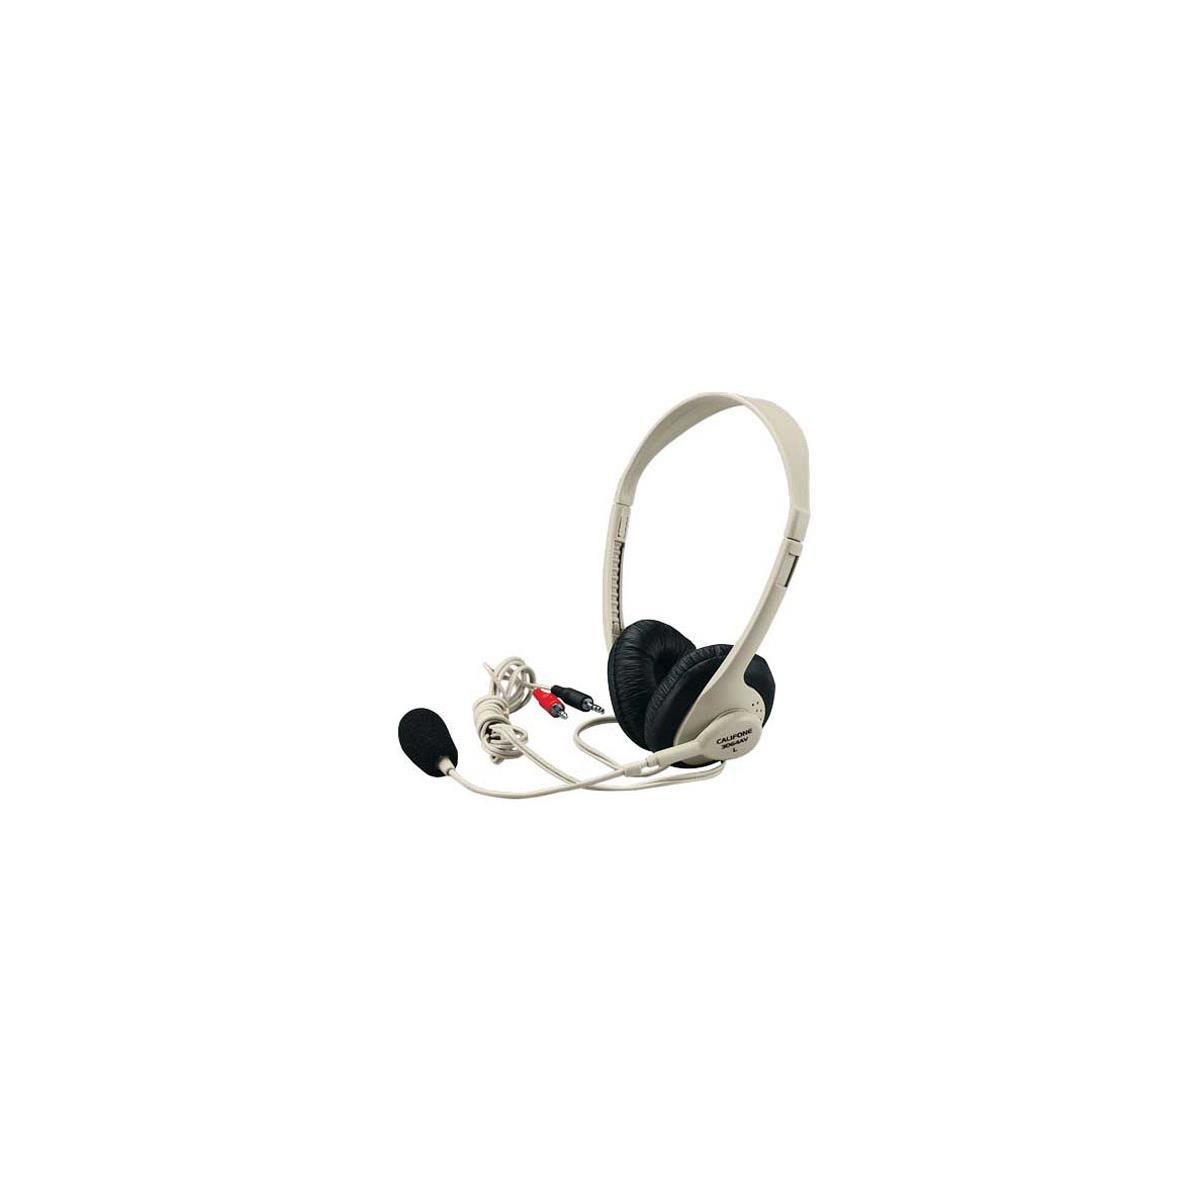 Image of Califone 3064AV Multimedia Stereo Headset